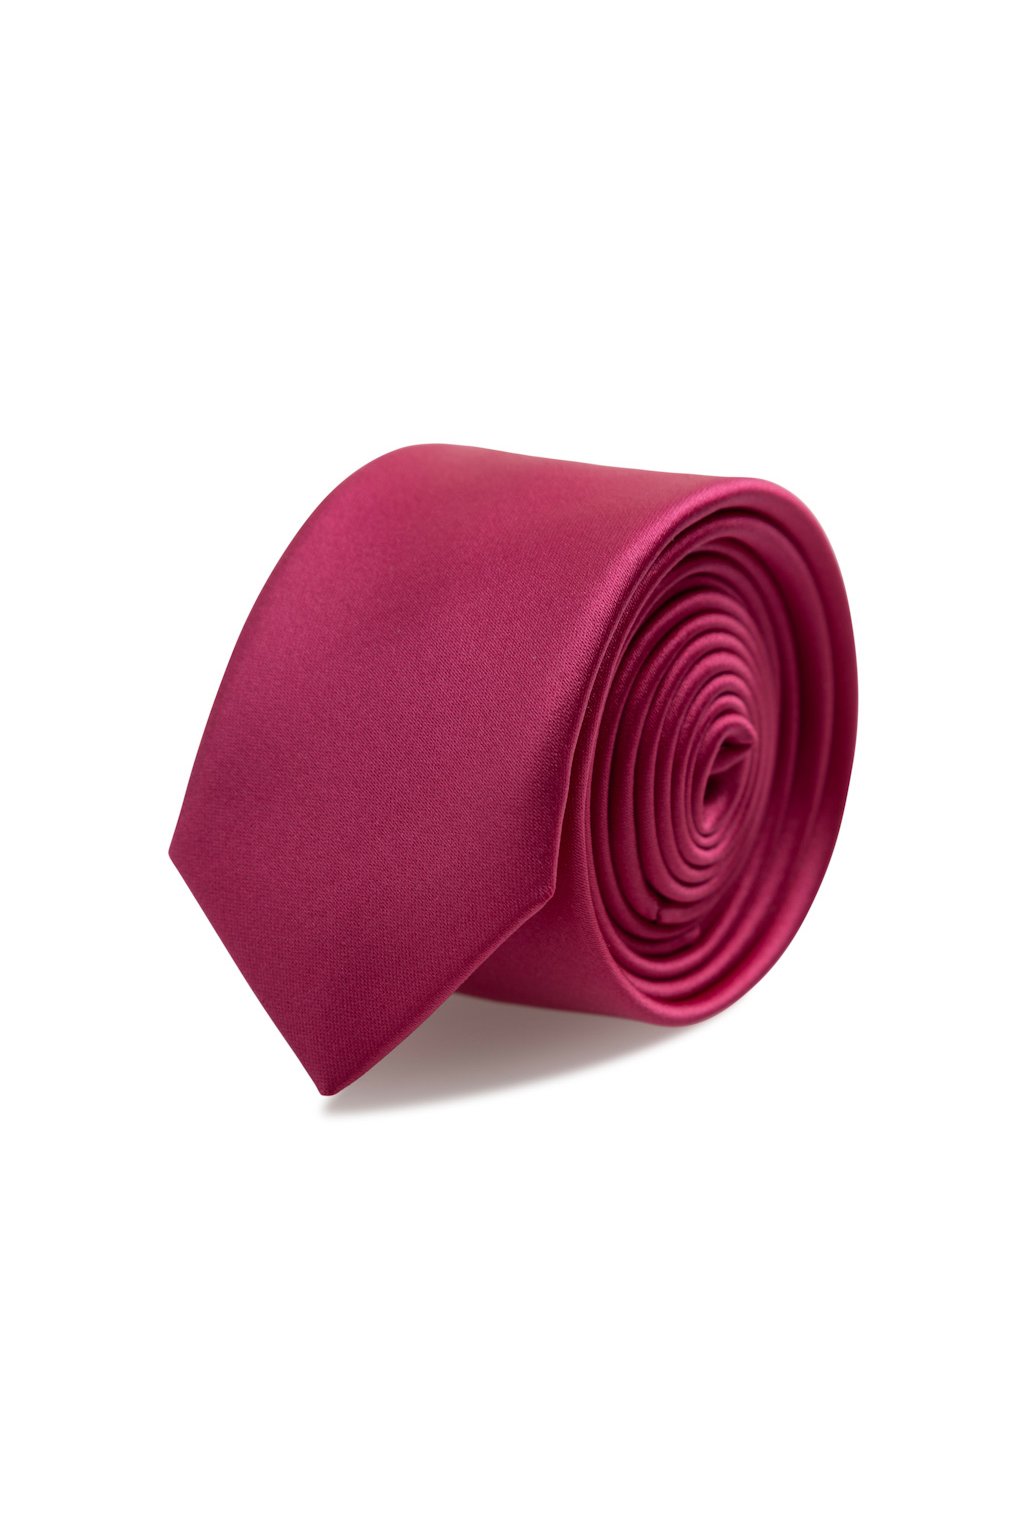 Slim kravata s kapesníčkem Brinkleys - sytě růžová